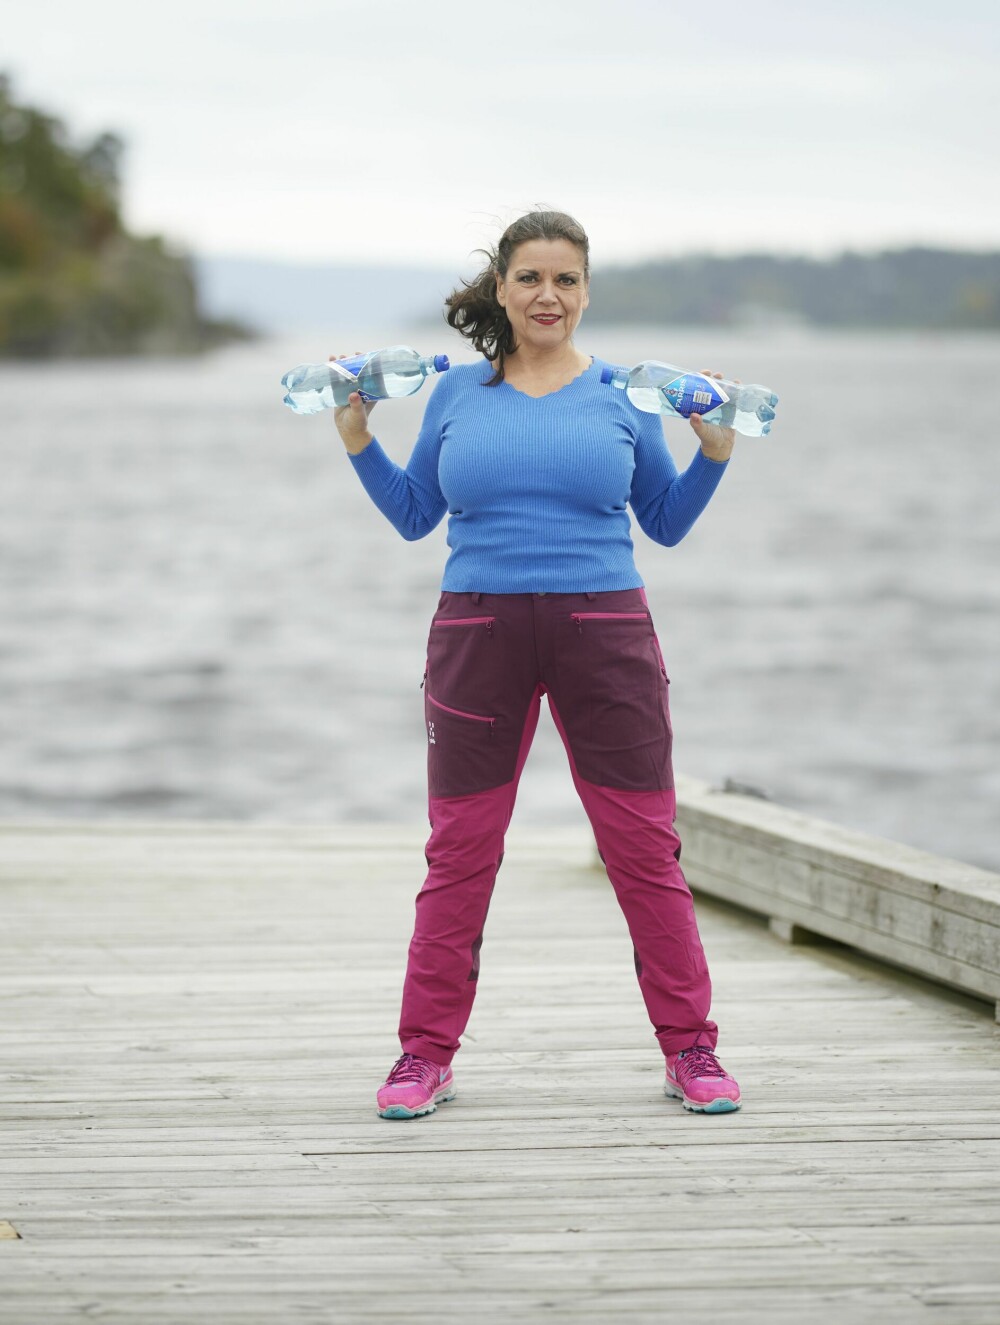 <b>SKULDERPRESS 2:</b> Bruk gjerne et par flasker med vann som vekter når du skal trene armene. Denne øvelsen trener tre muskelgrupper på én gang. I denne posisjonen er det skuldrene som blir sterkere.